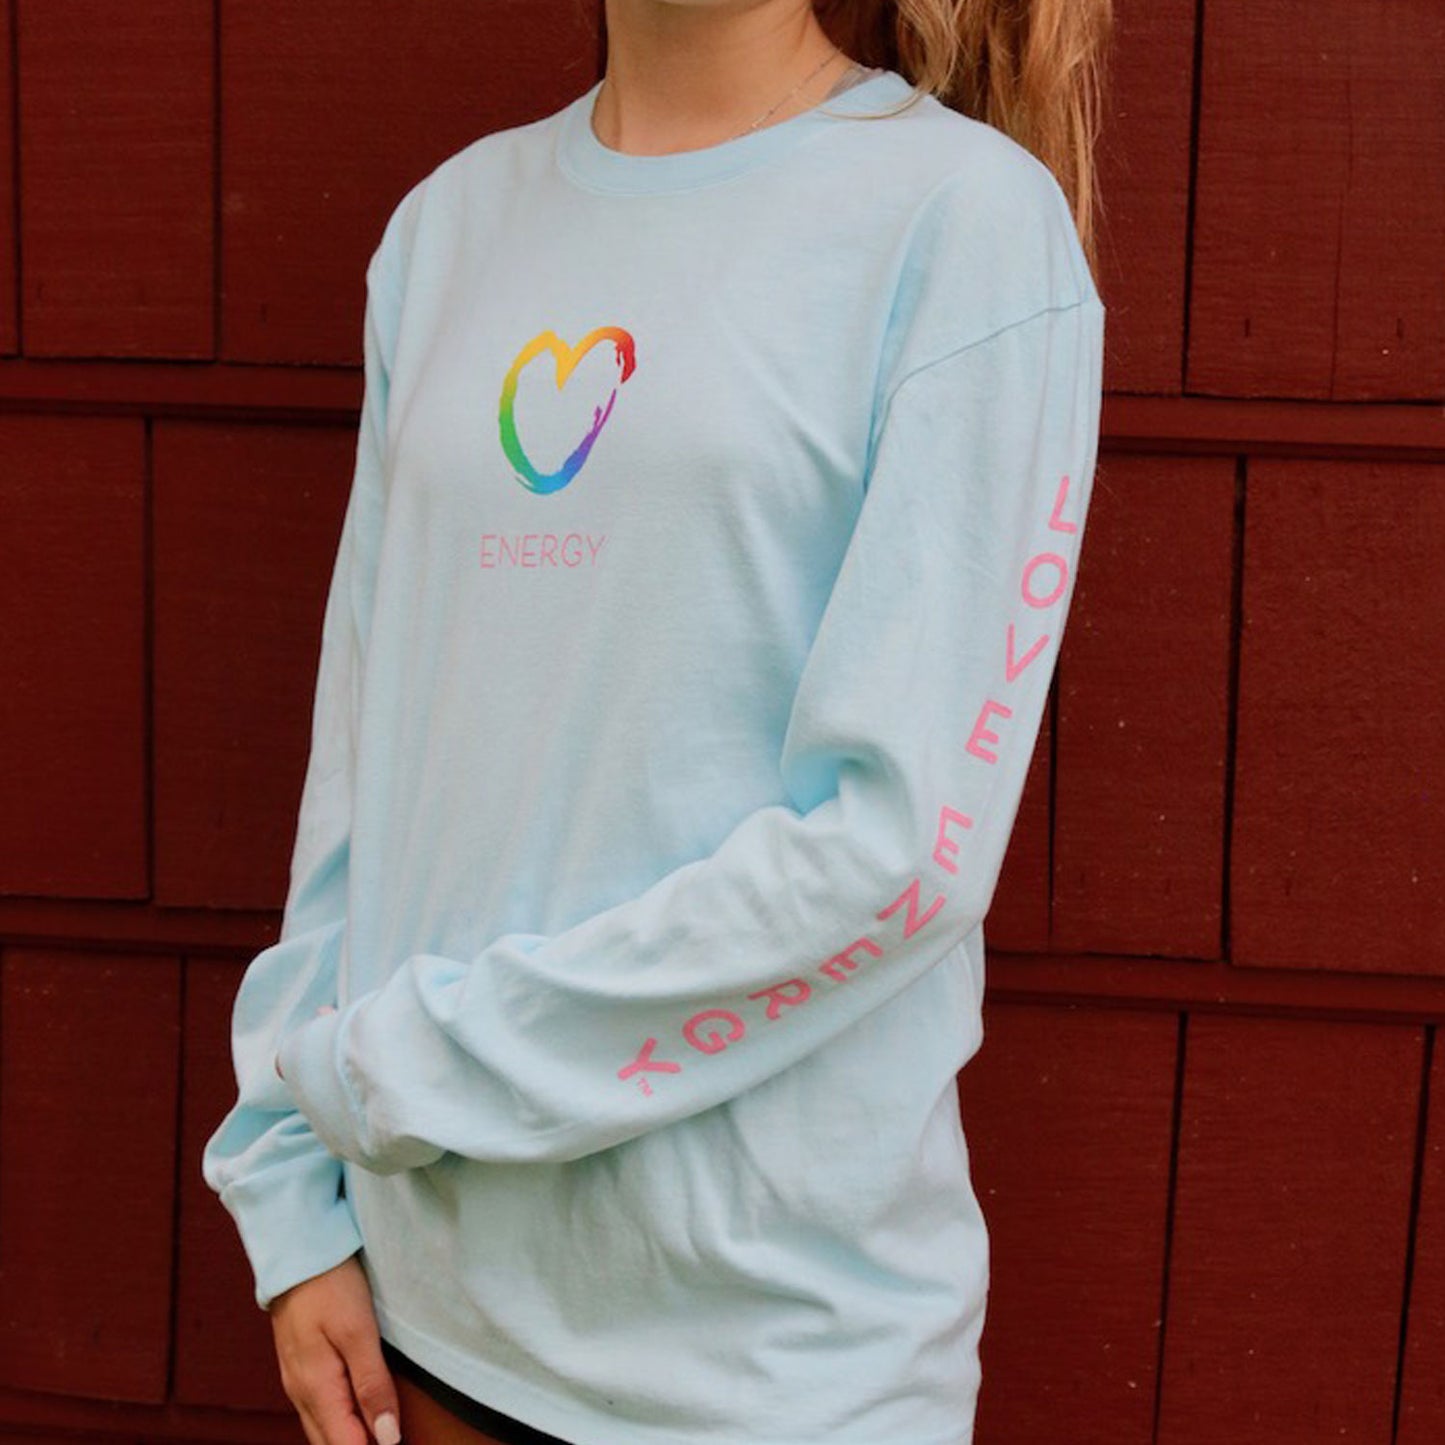 Rainbow Heart Long Sleeve T-Shirt